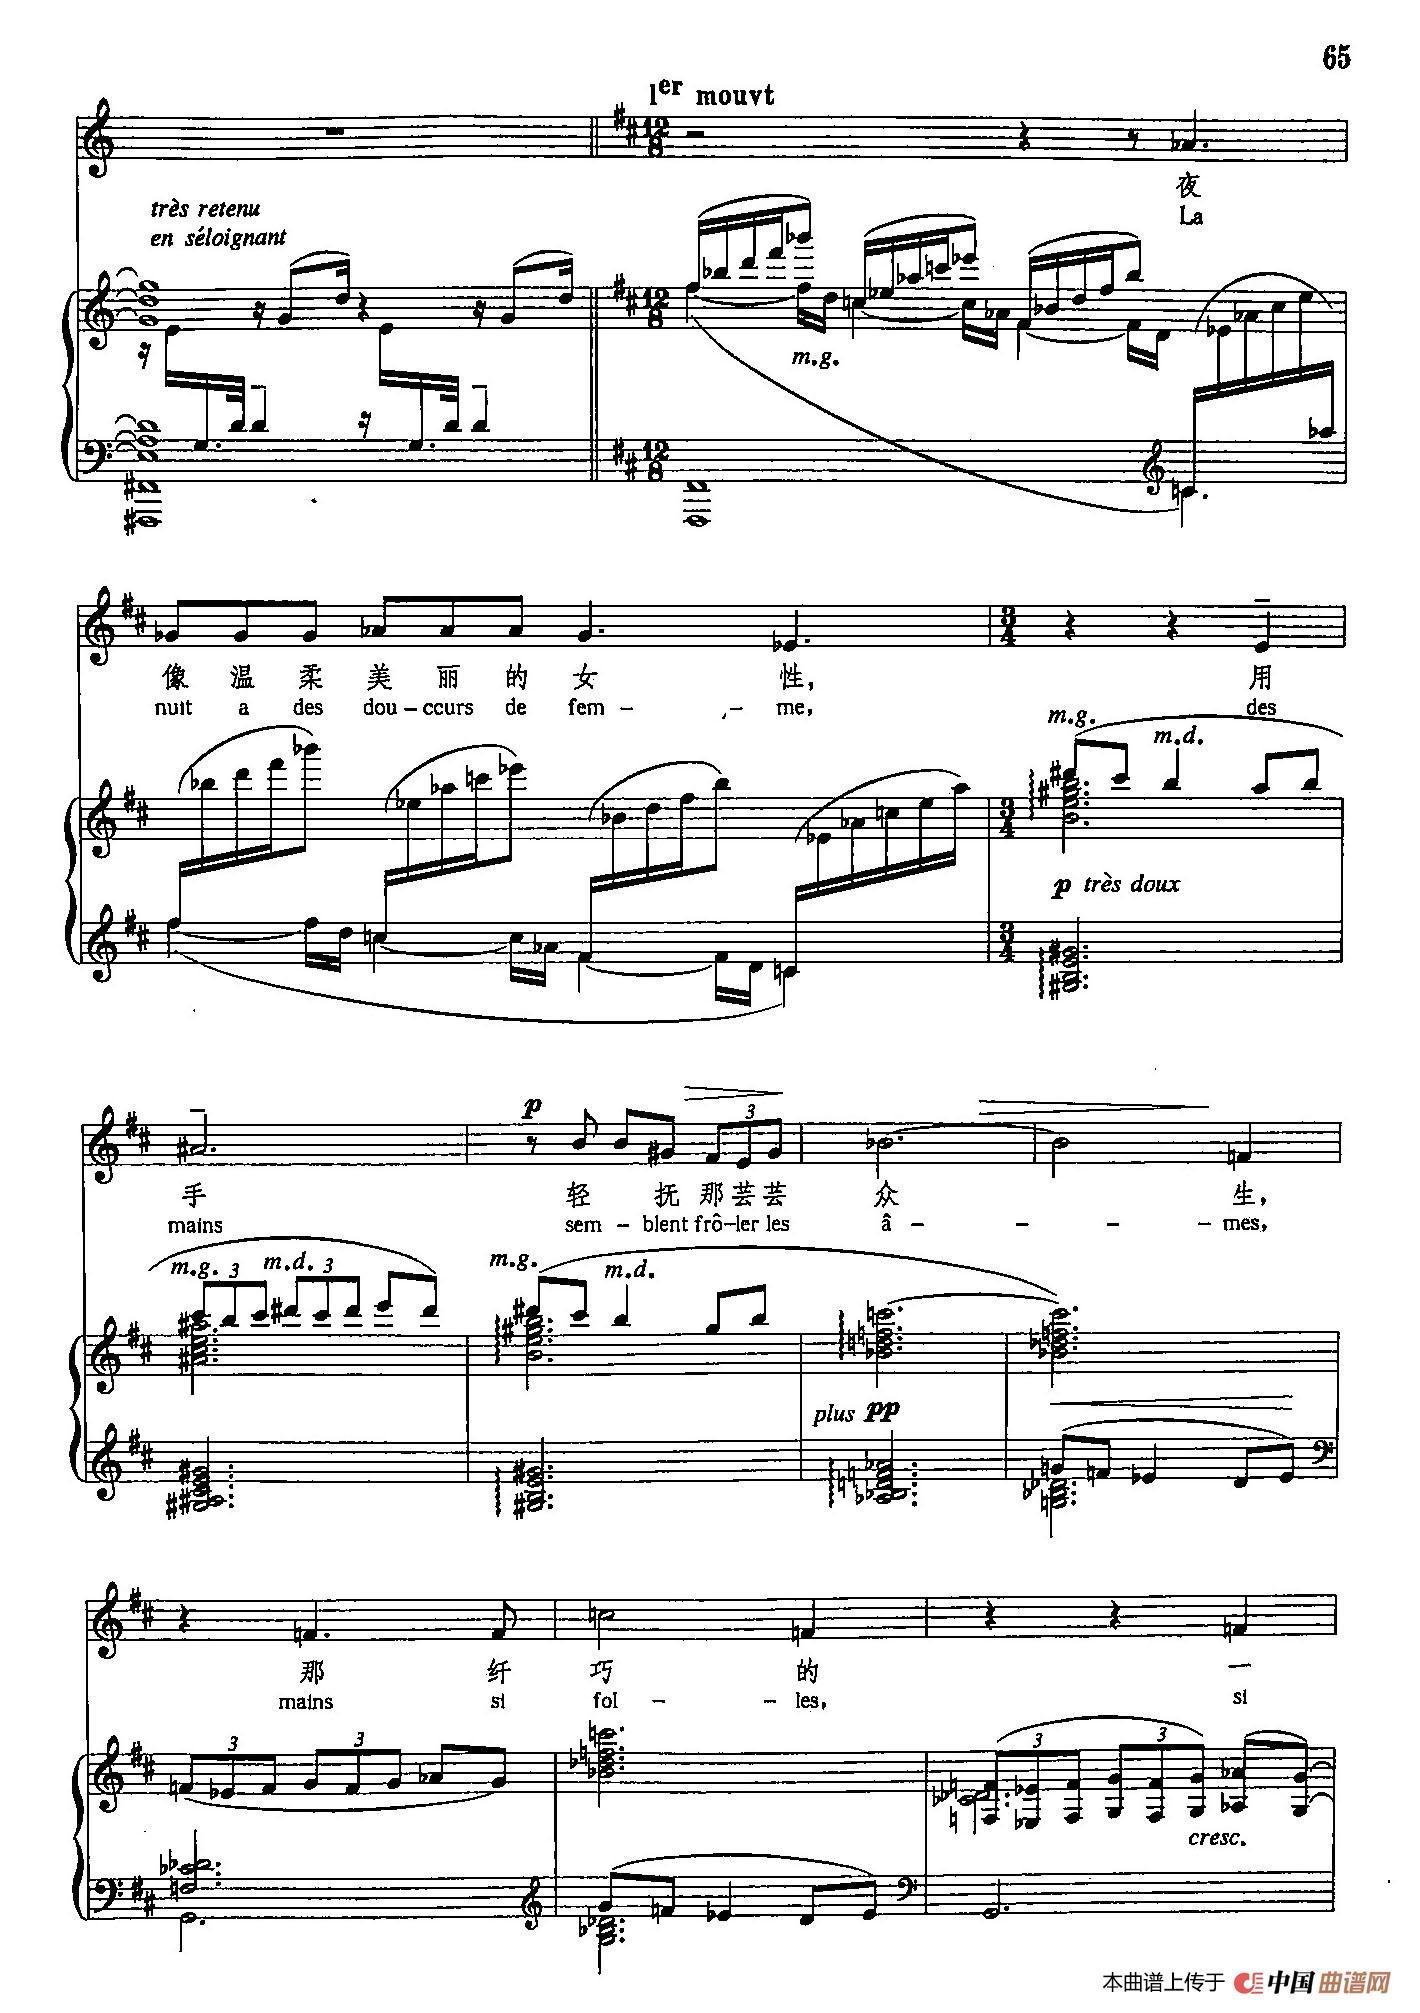 声乐教学曲库5-12梦（正谱）(1)_原文件名：声乐教学曲库5-12梦（正谱）7.jpg